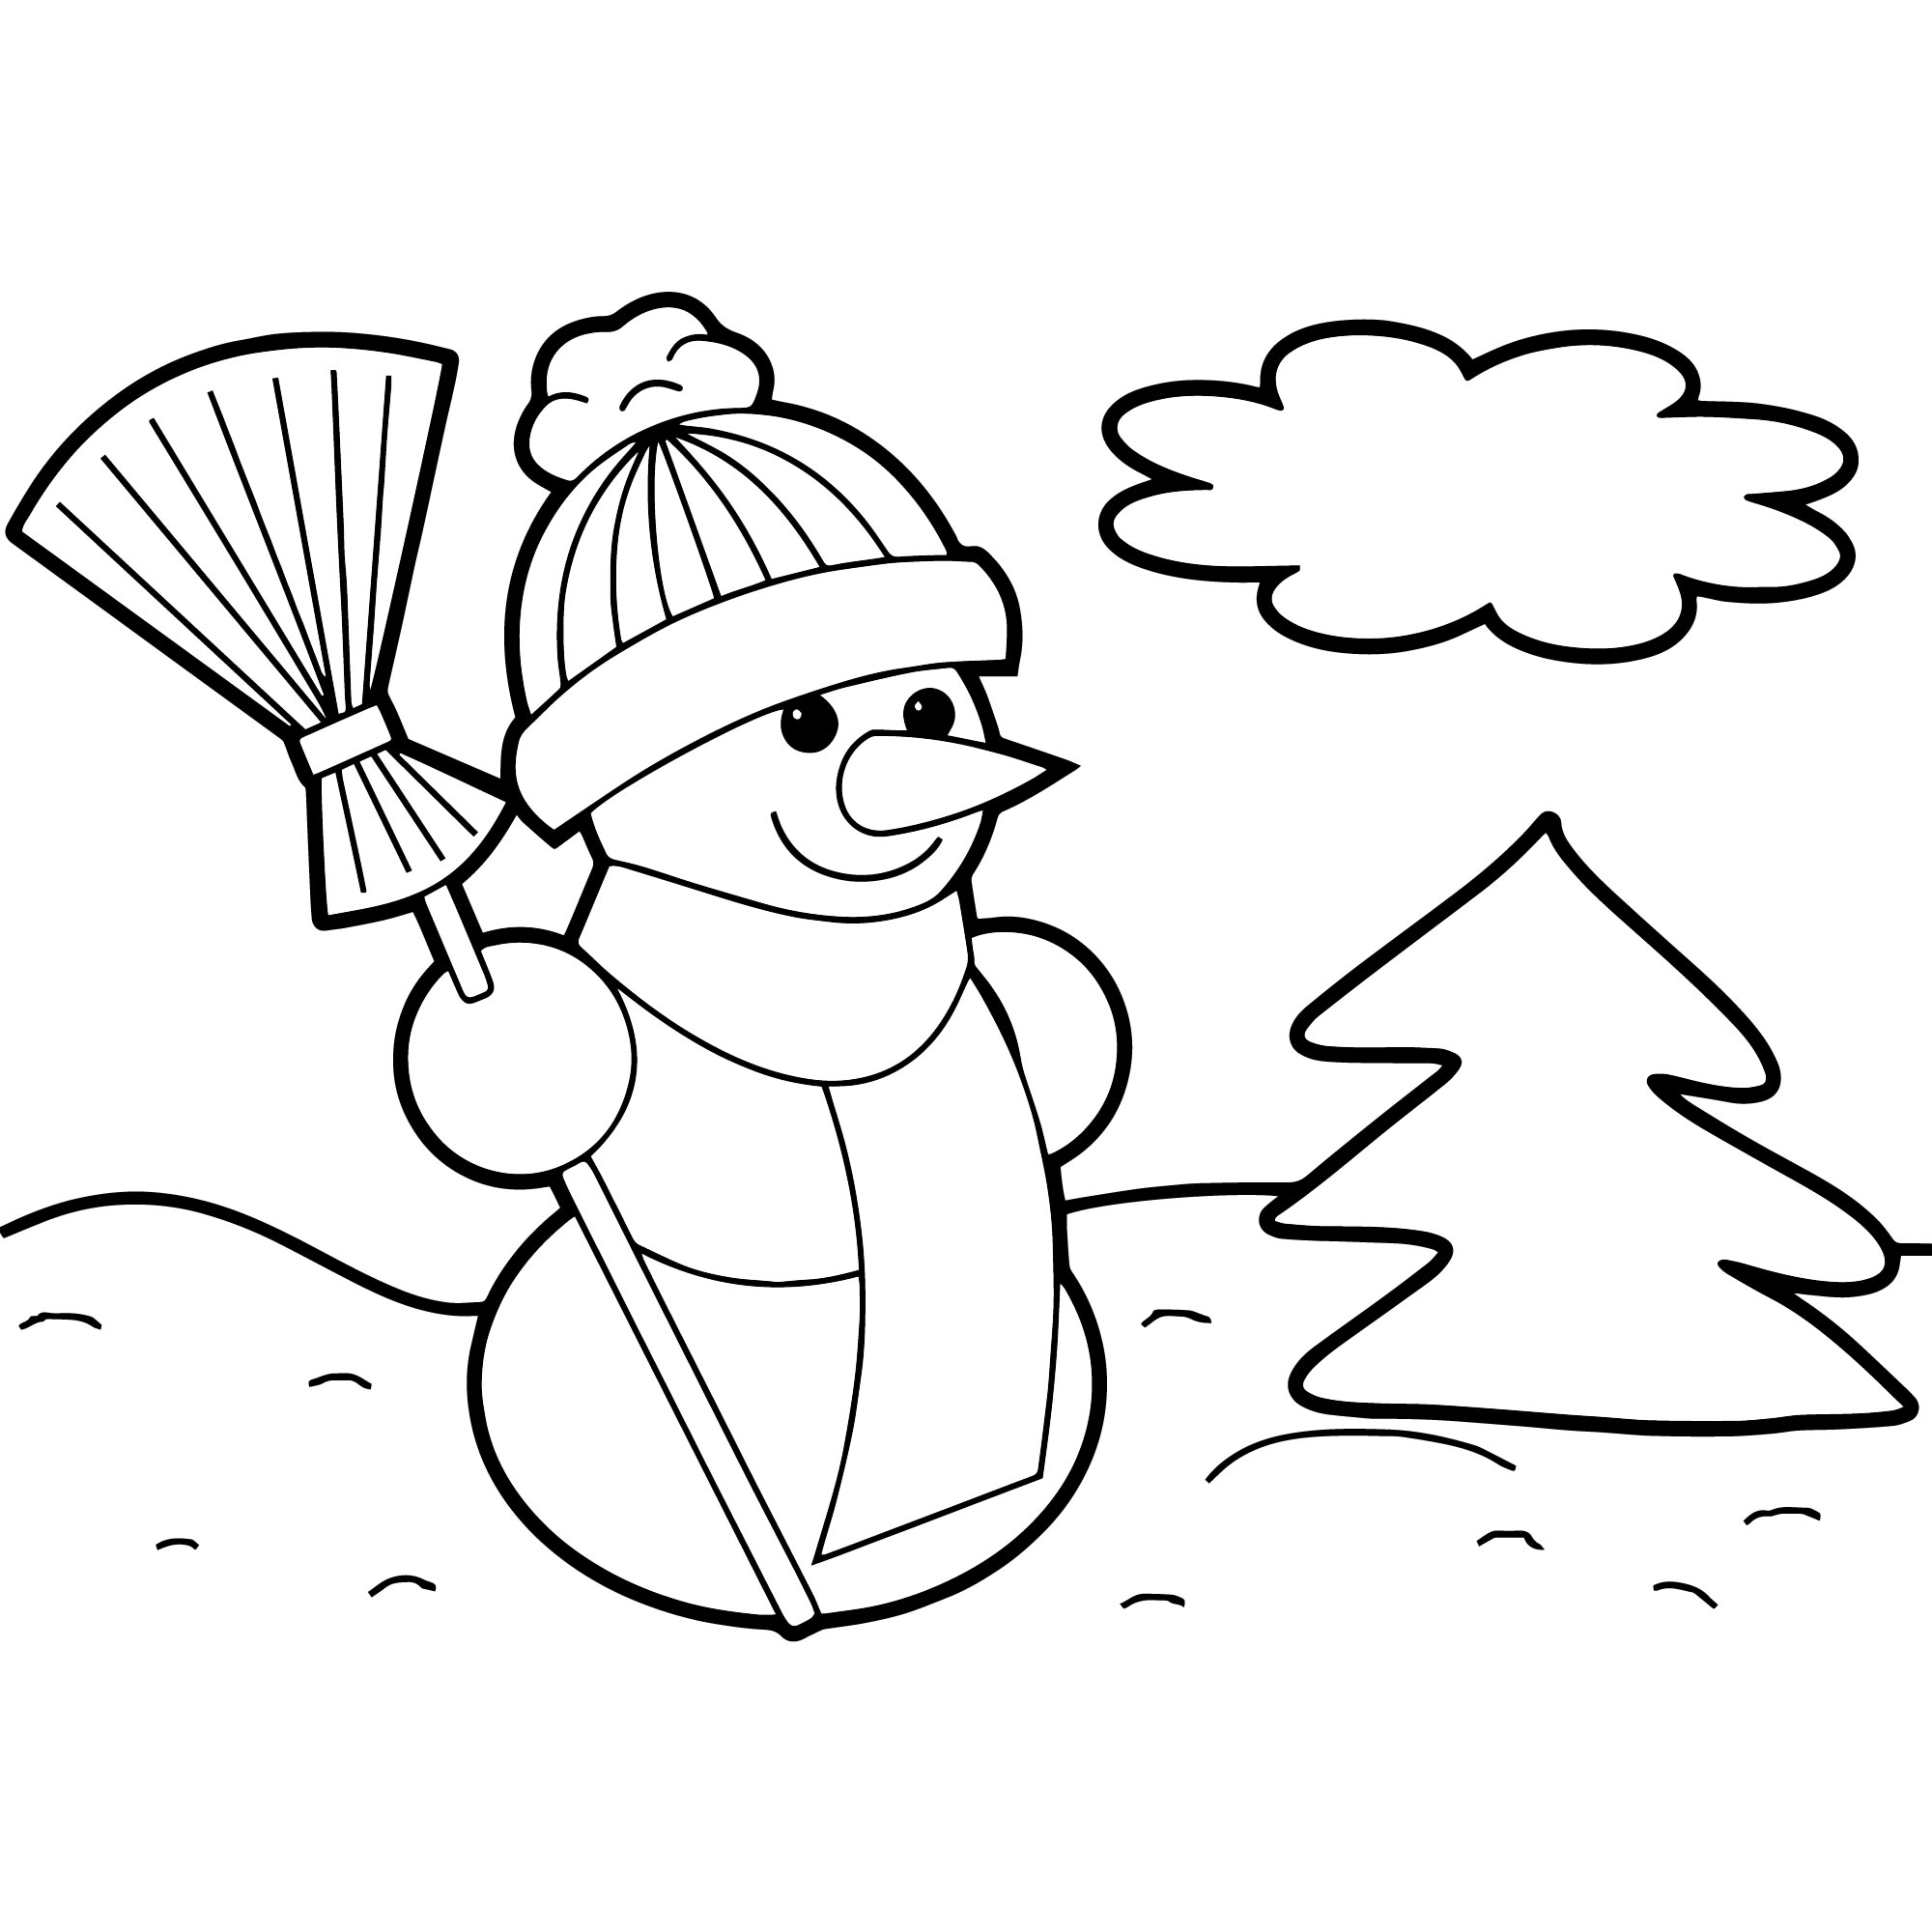 Раскраска Снеговик | Раскраски для самых-самых маленьких ( года)